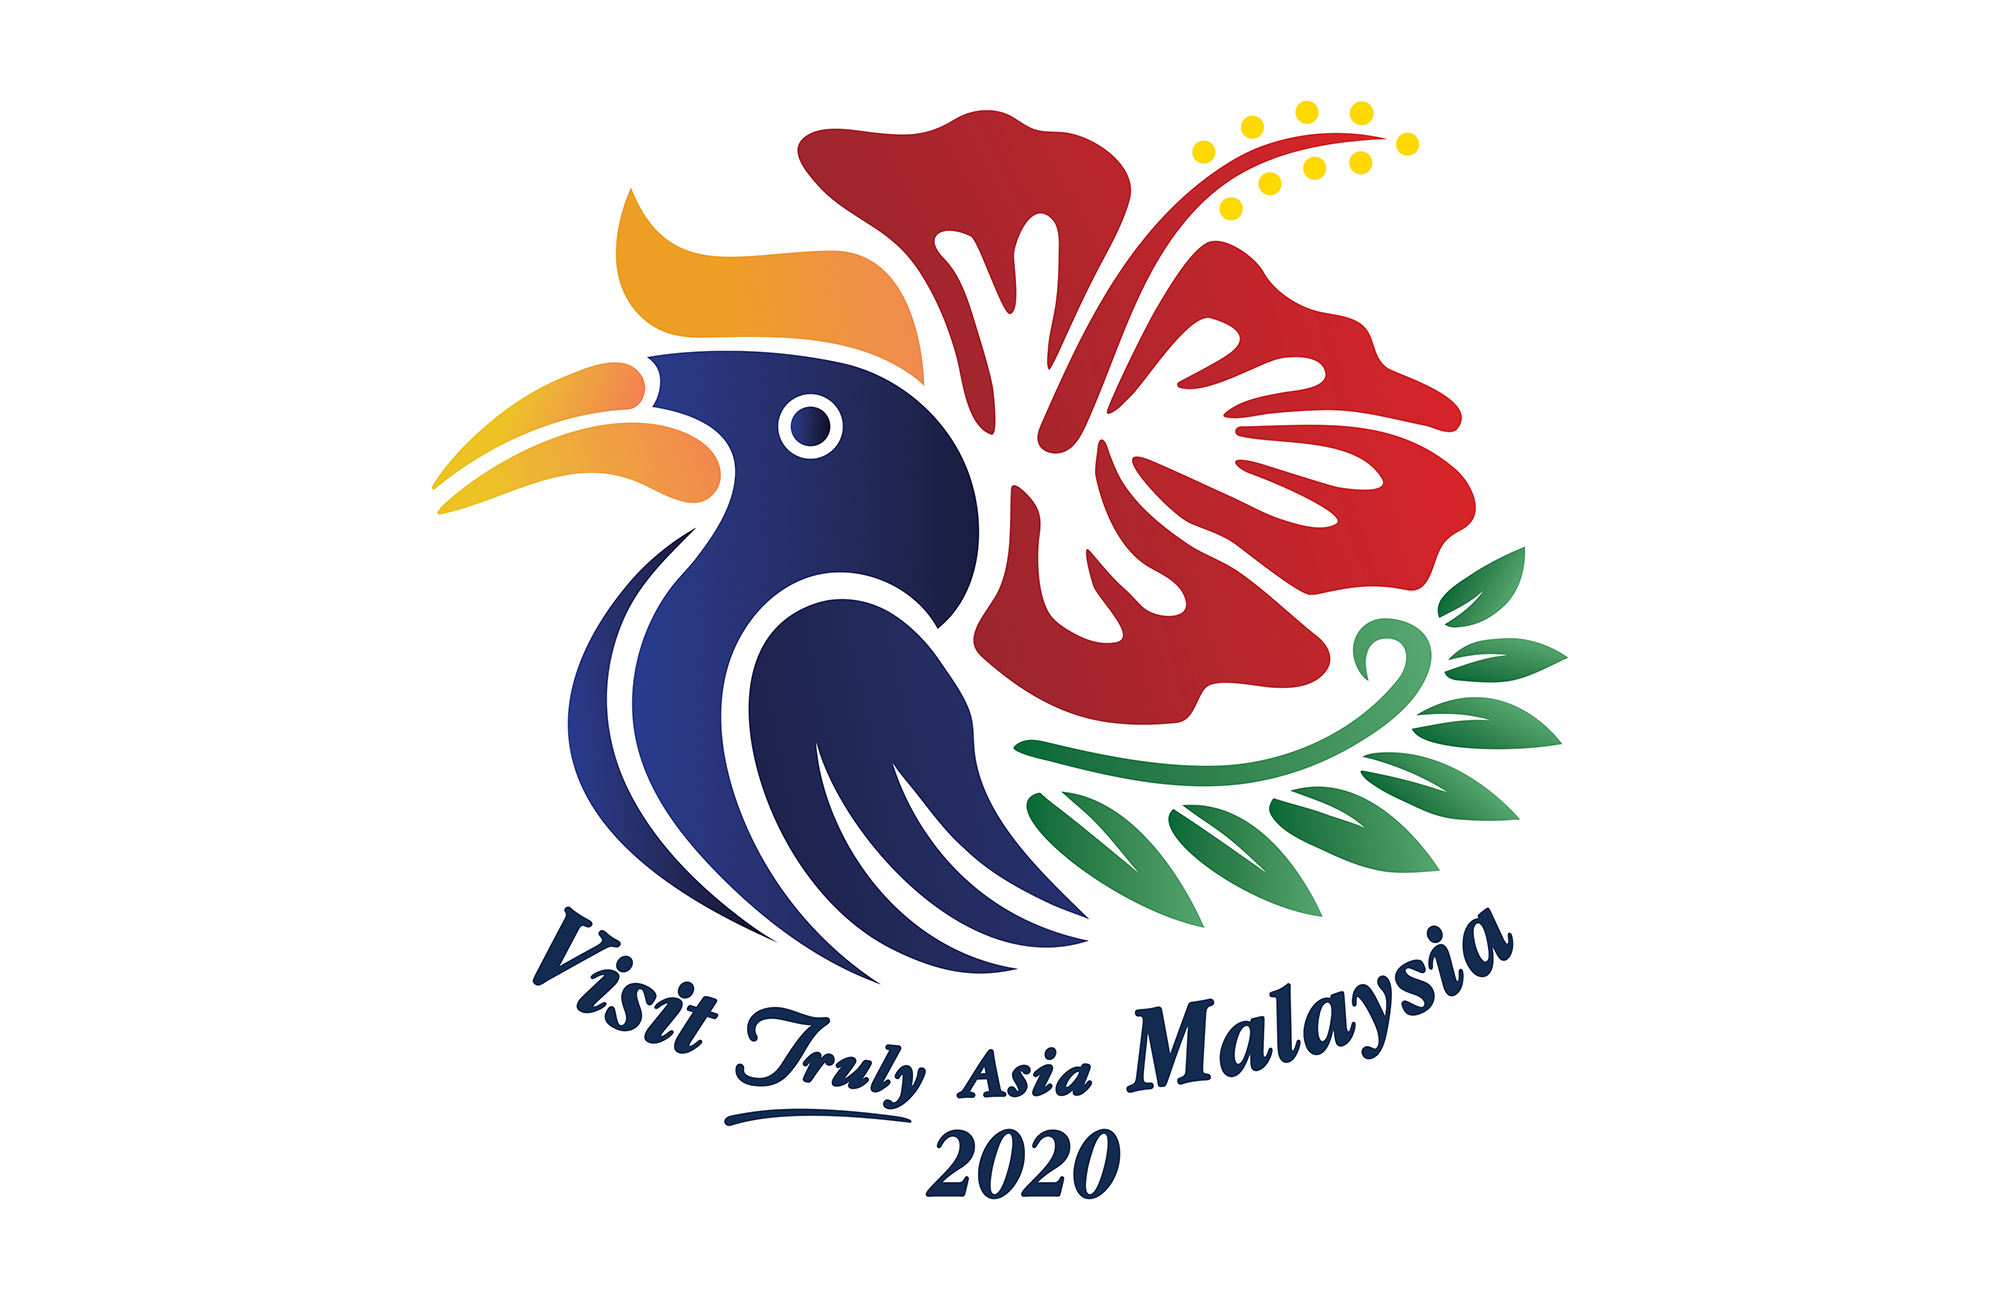 tourism-malaysia-logo